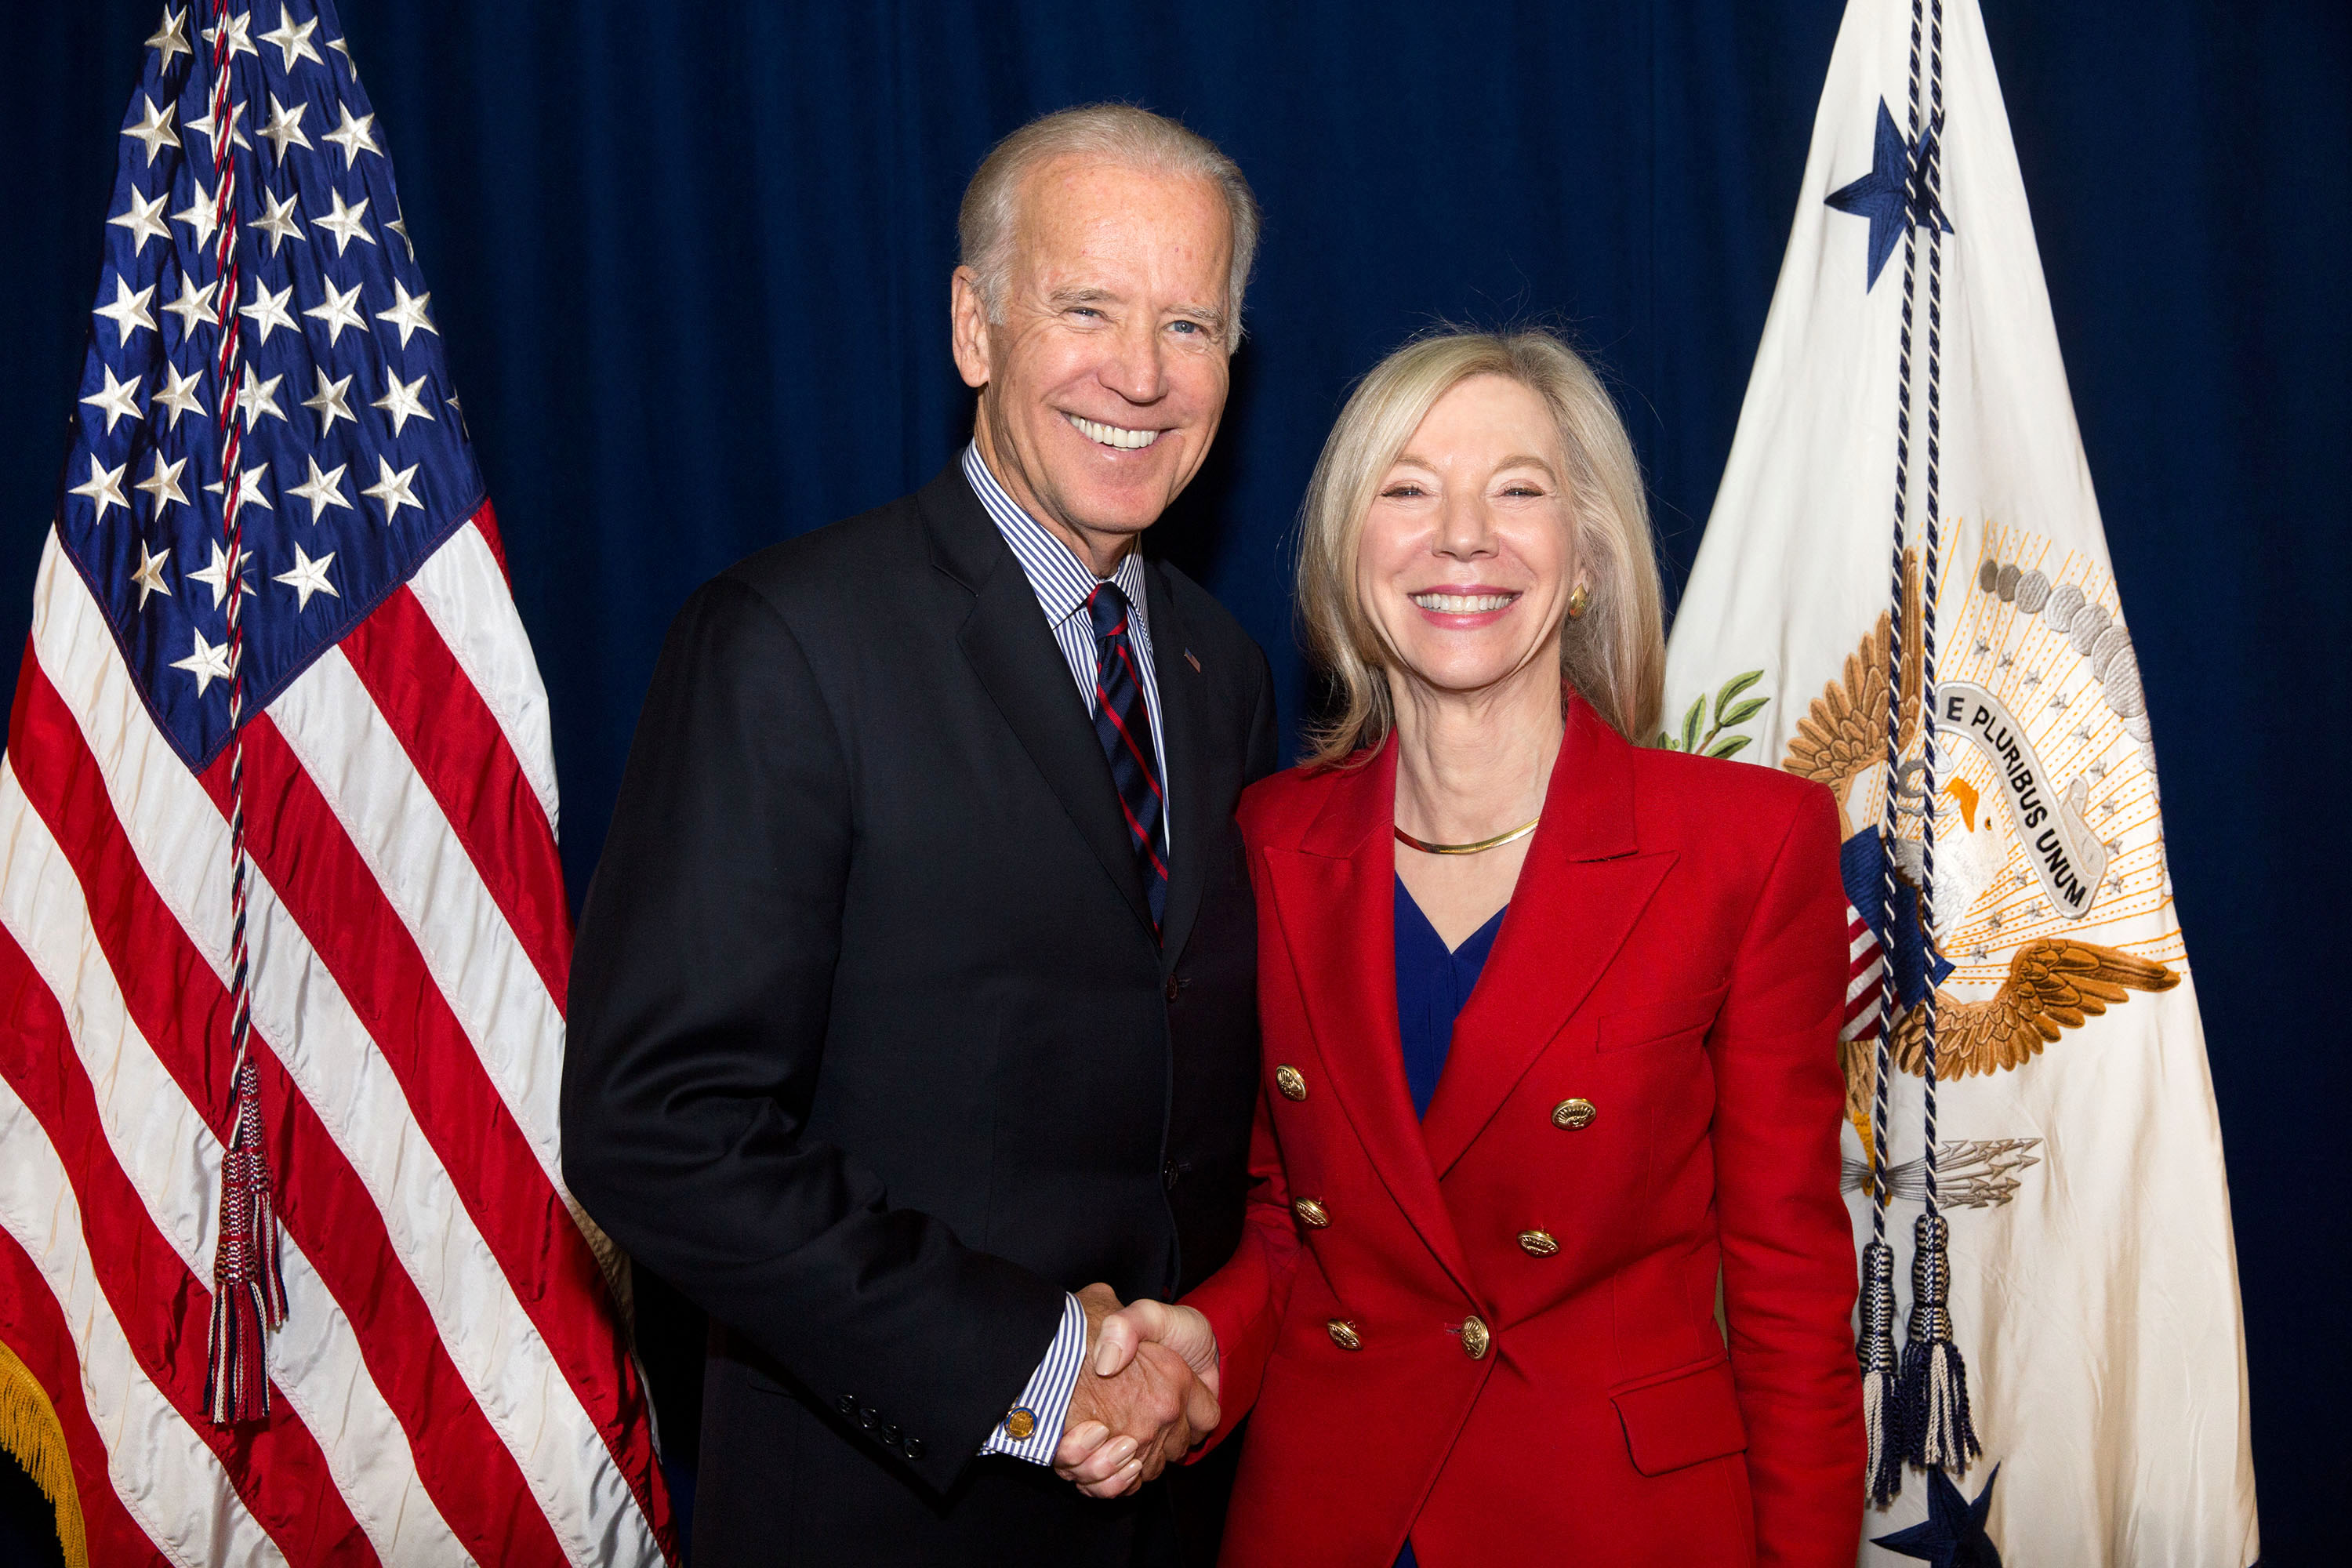  Vice President Joe Biden to Lead the Penn Biden Center for Diplomacy and Global Engagement